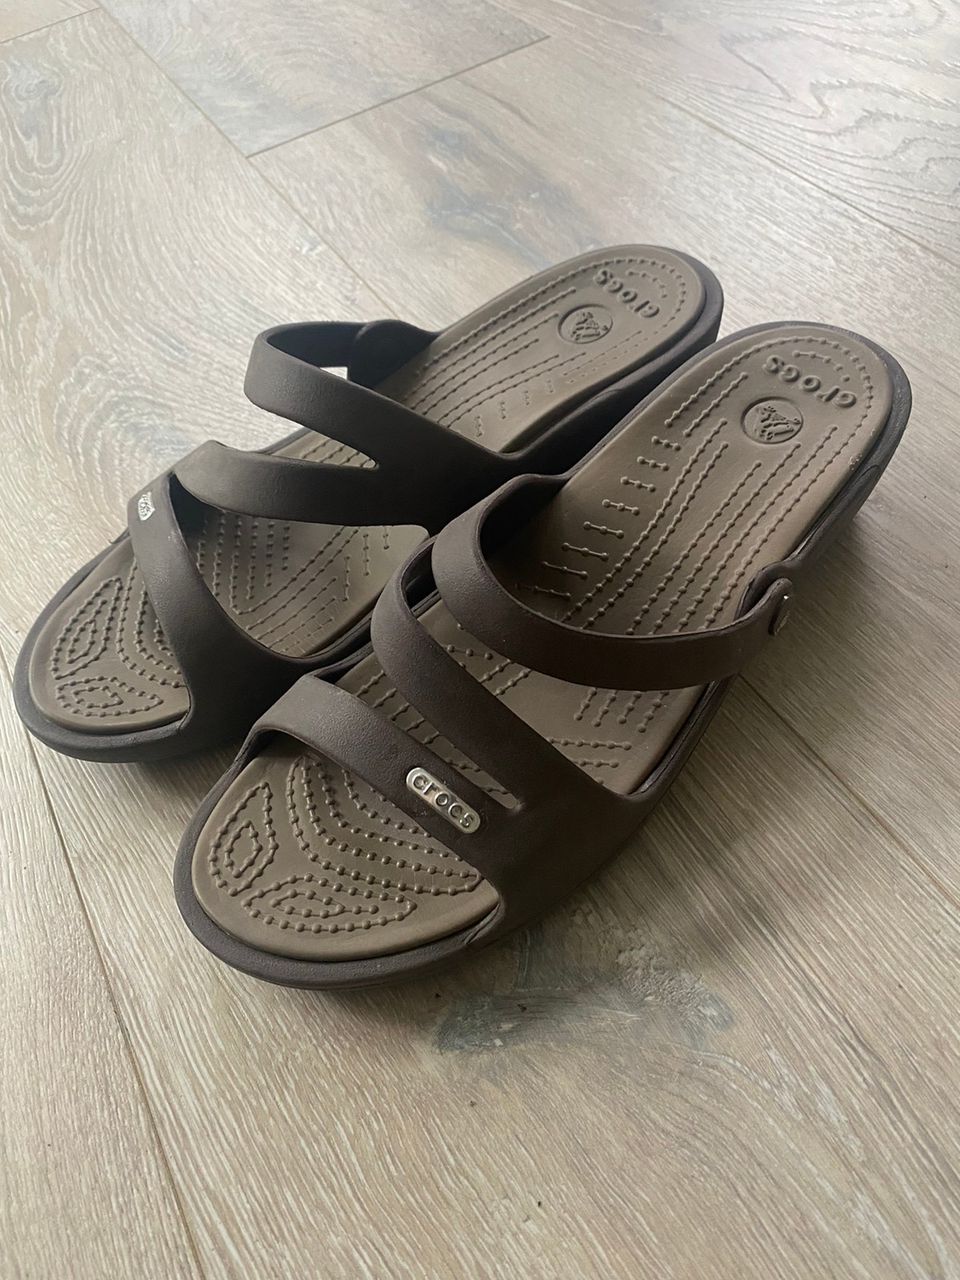 Crocs naisten sandaalit W8 (39)